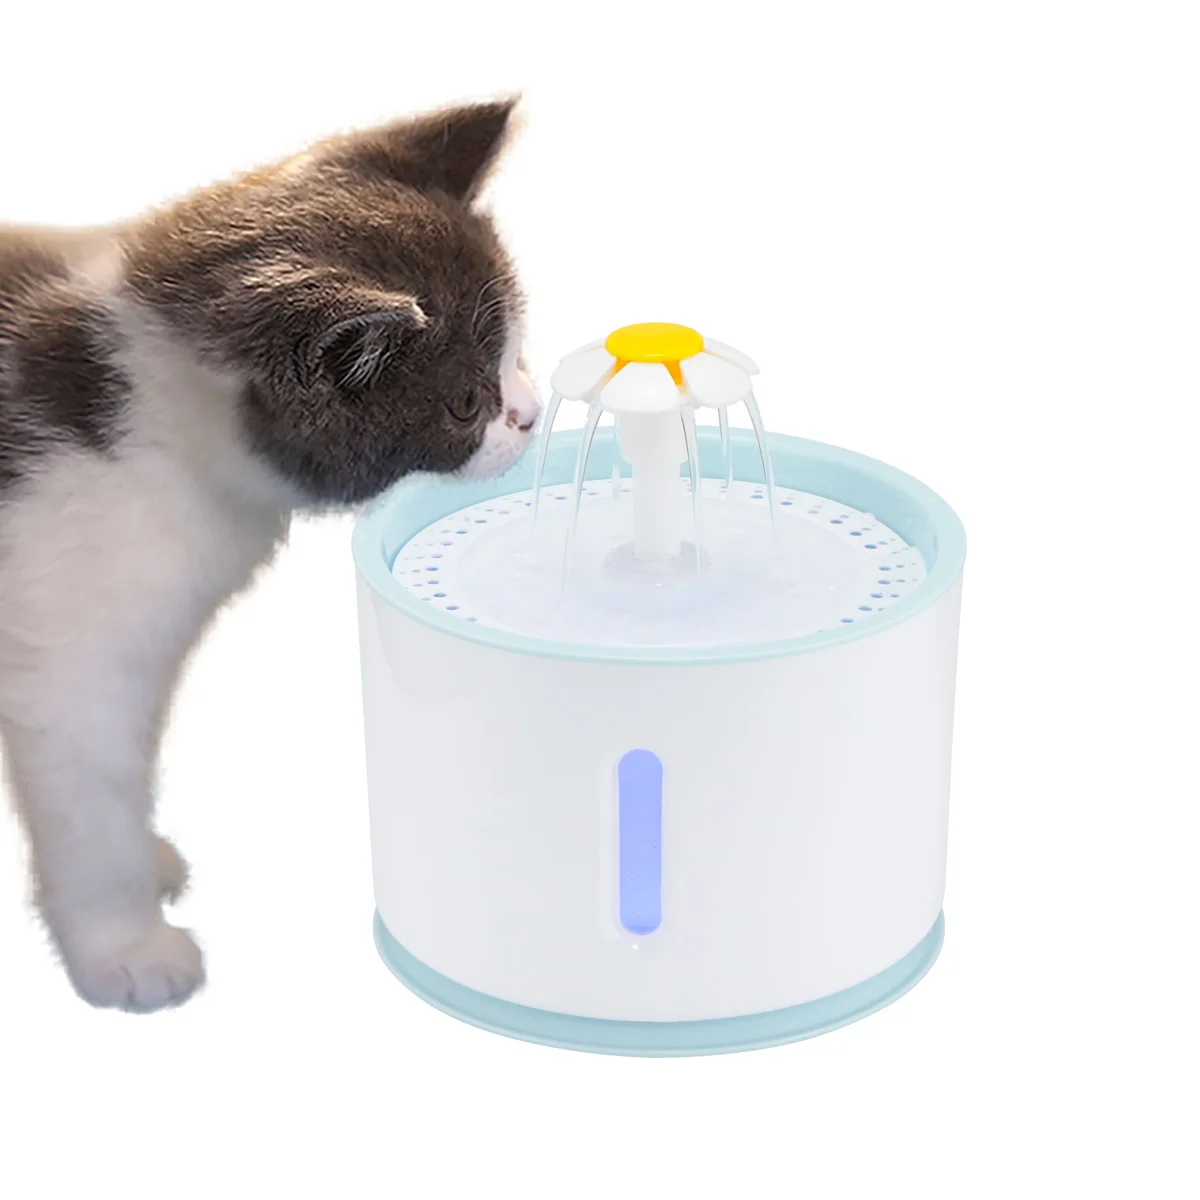 Автоматический водный фонтан для кошек 2.4L Электрический фонтан для воды собака кошка поилка для домашних животных кошка питьевой разливной автомат& цветок